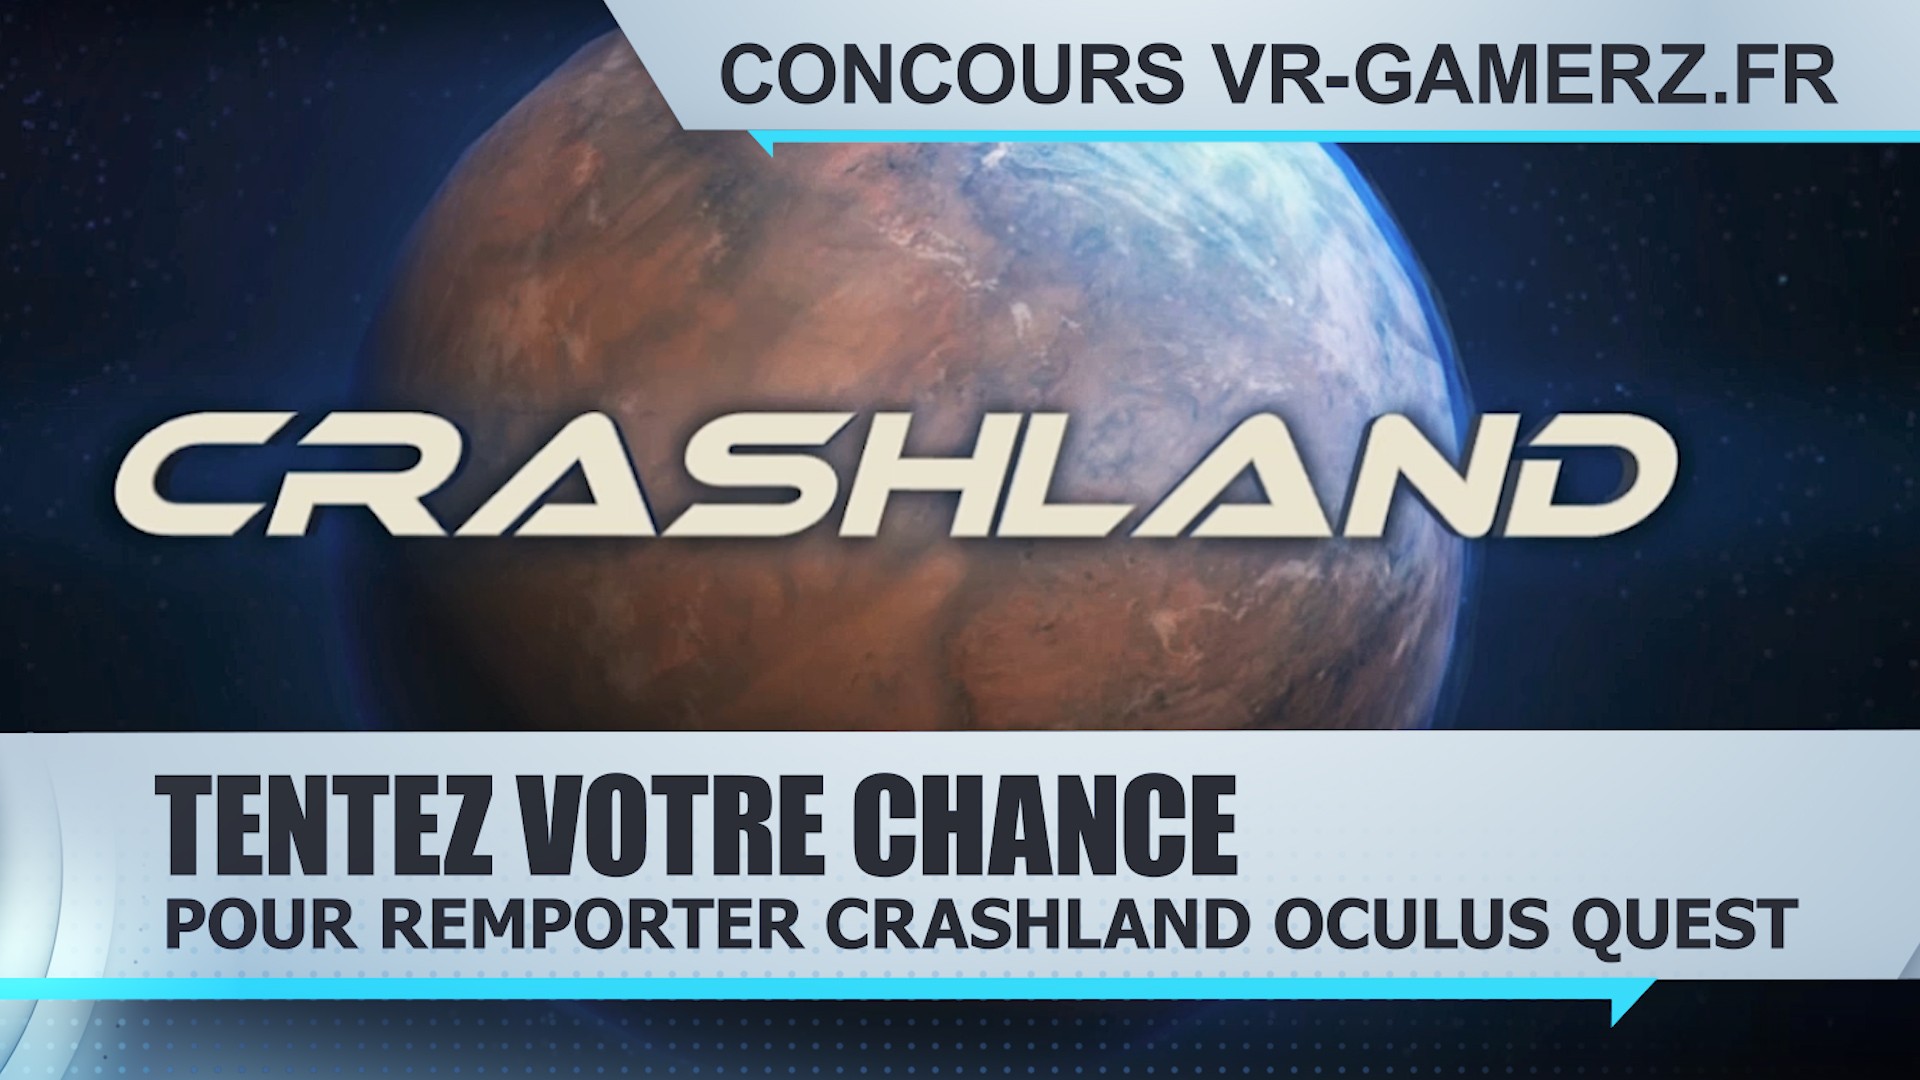 Concours : Remportez Crashland sur Oculus quest !